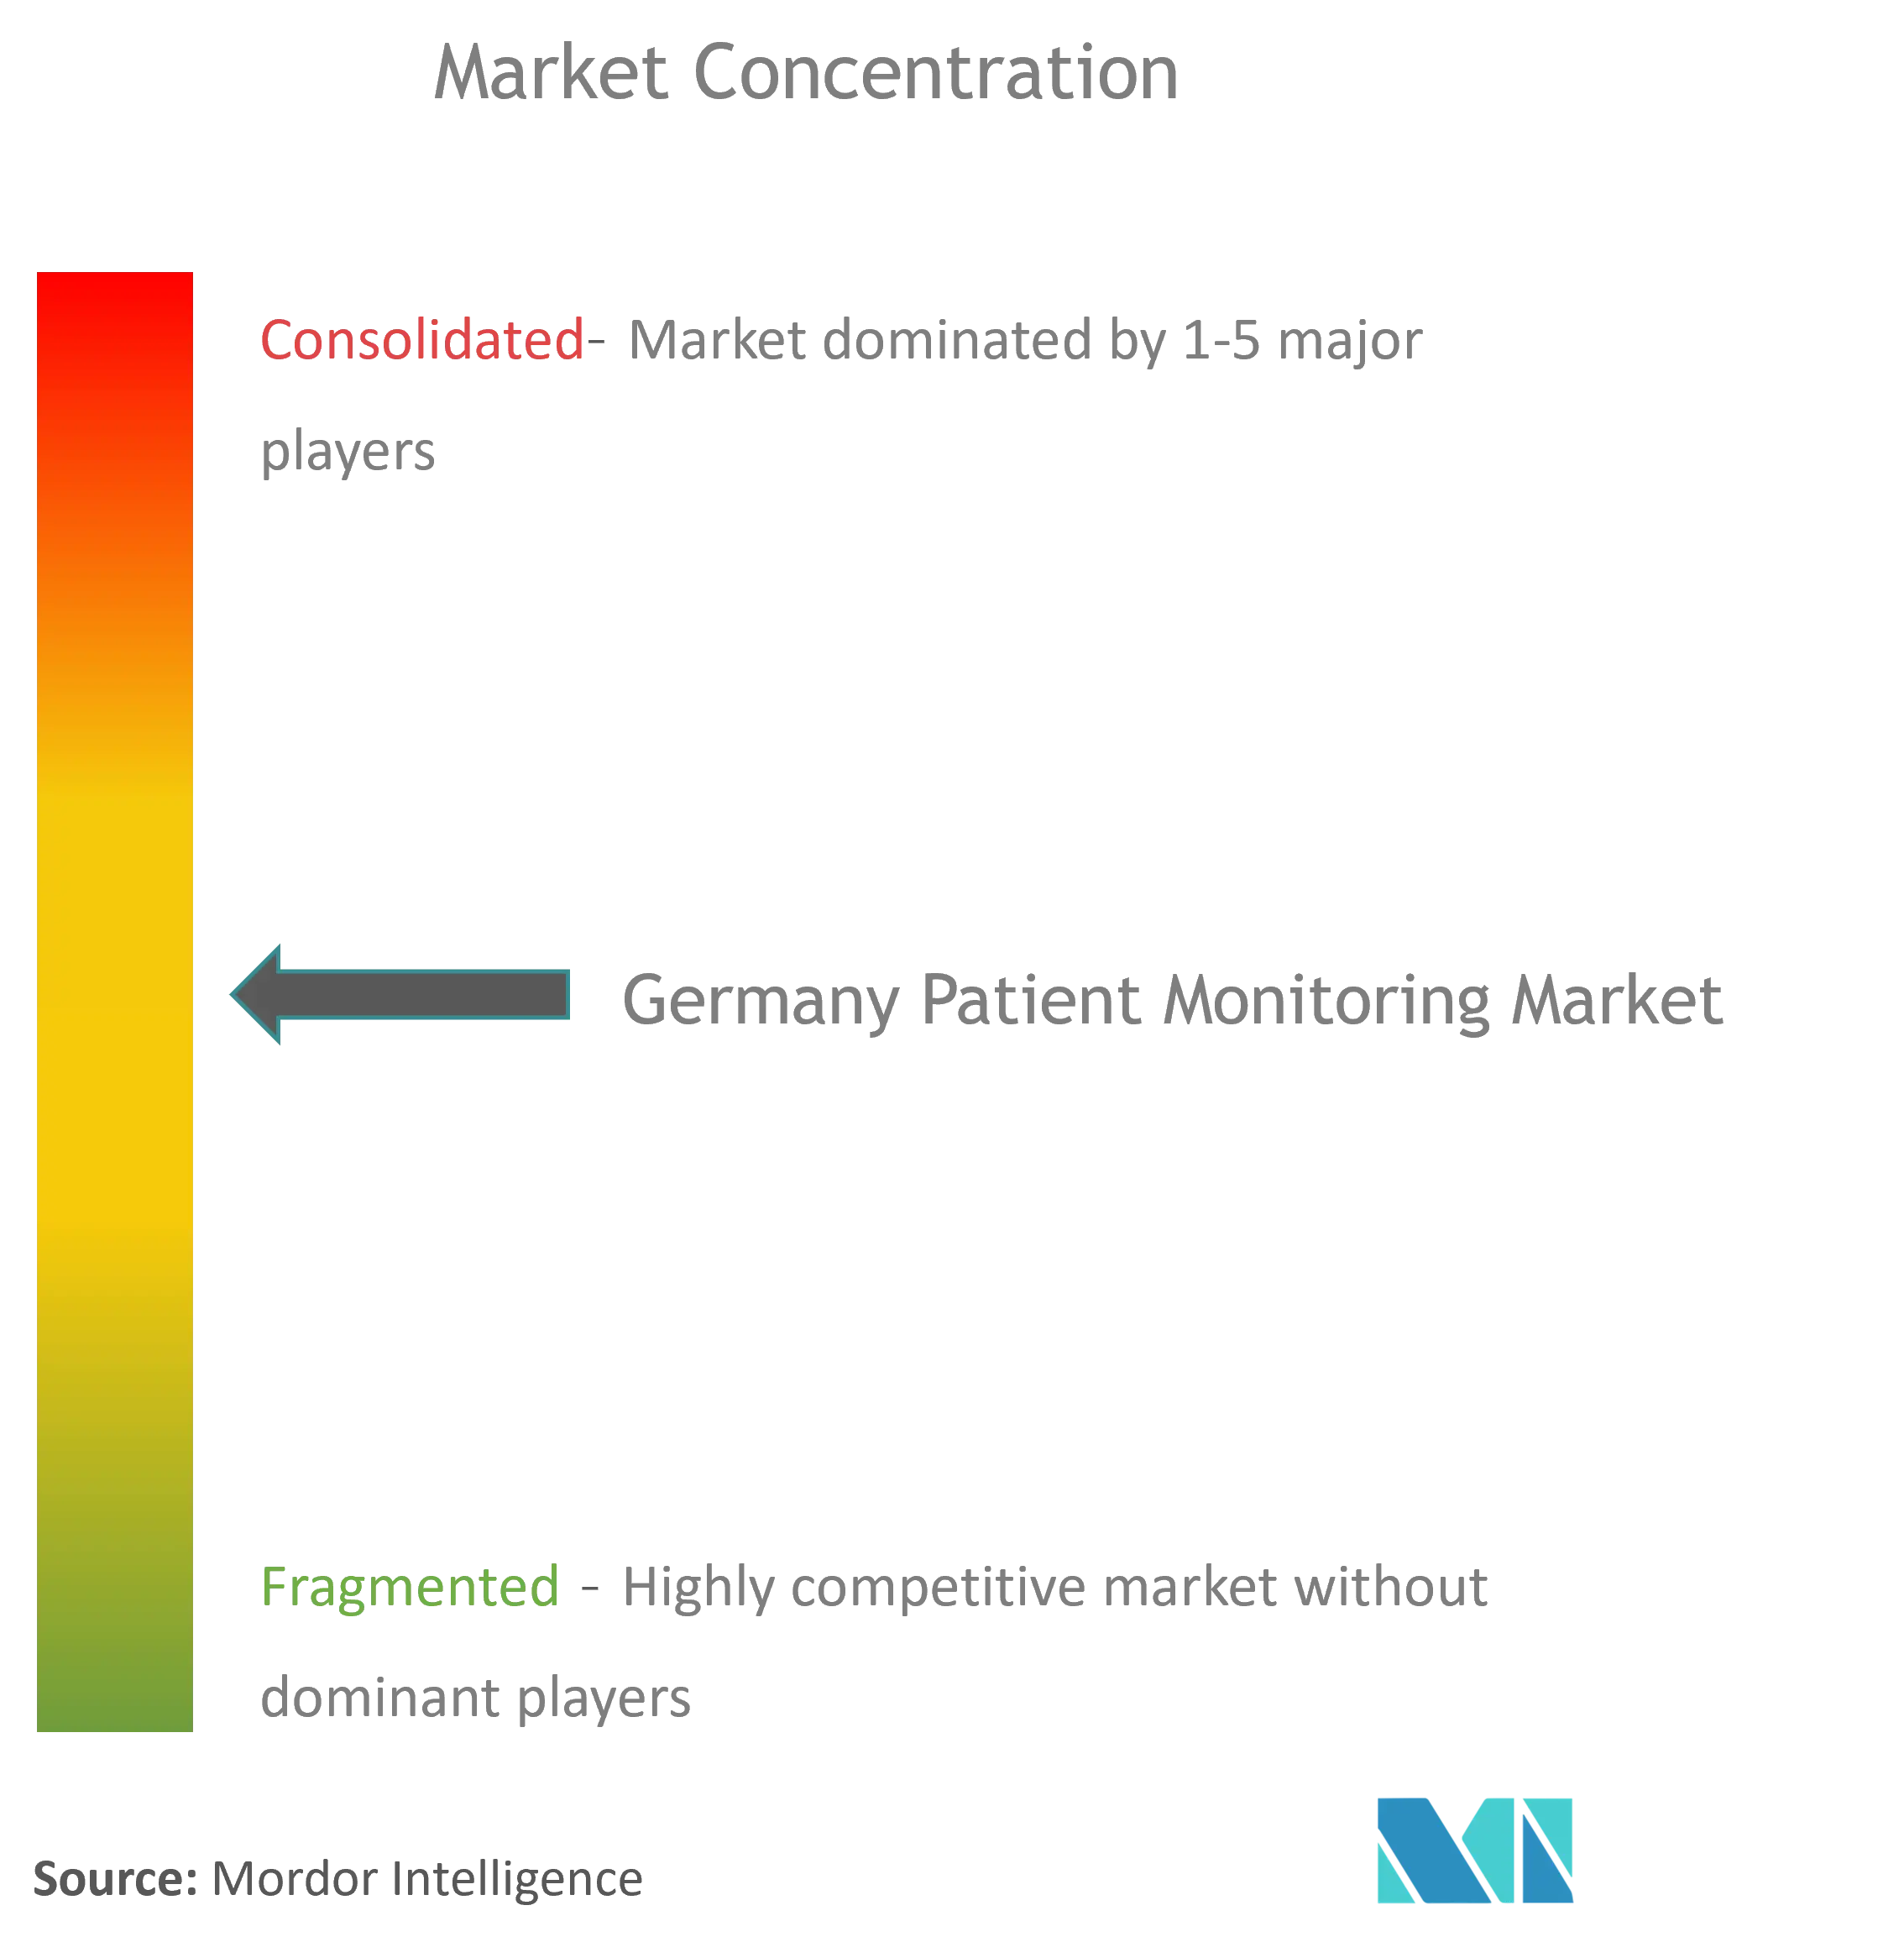 ドイツの患者モニタリング市場 - CL.png